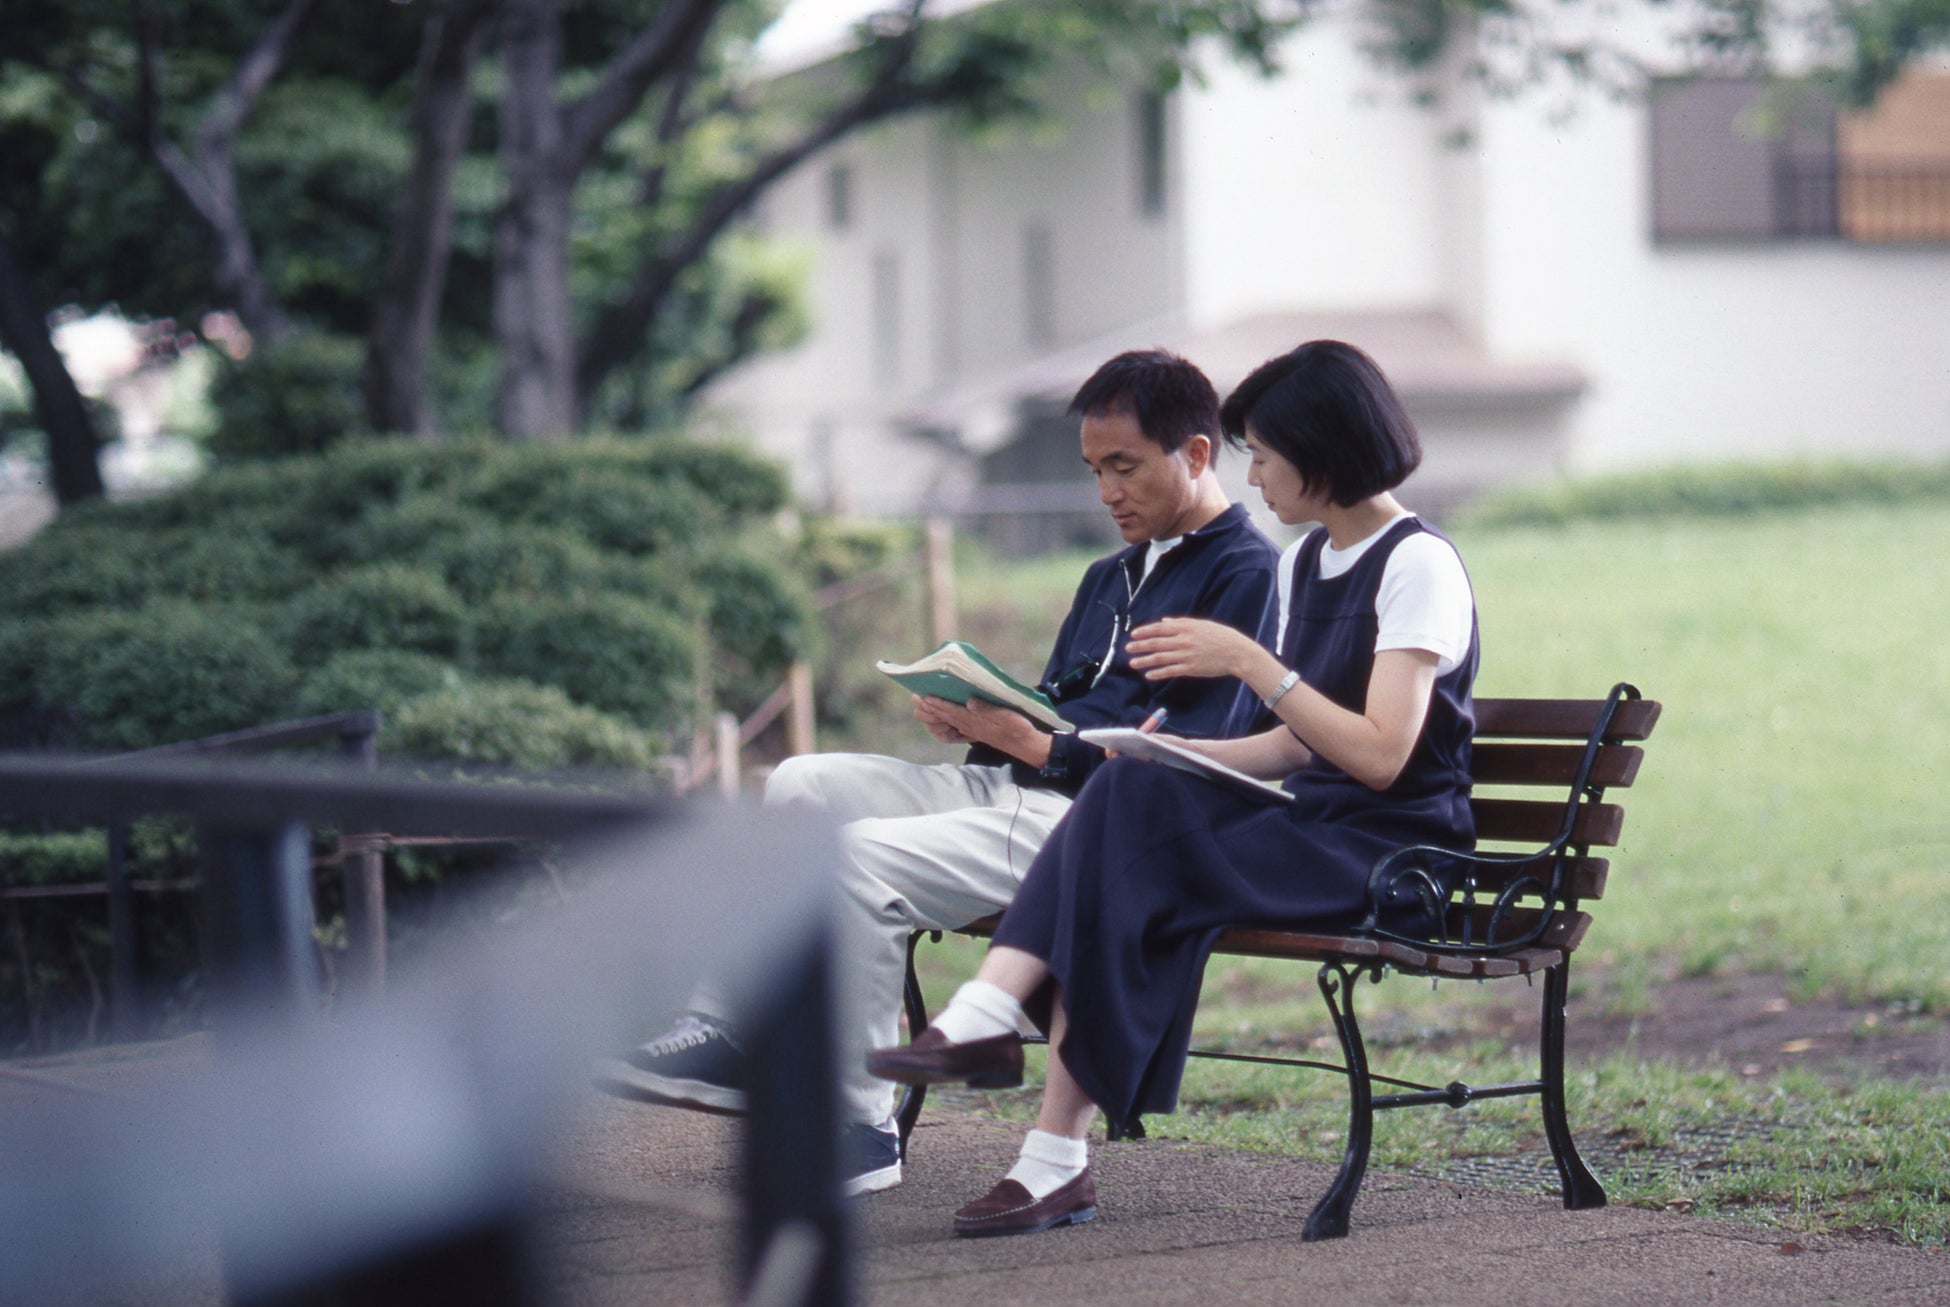 映画「緑の街」メイキング『LIFE-SIZE KAZUMASA ODA 1997』